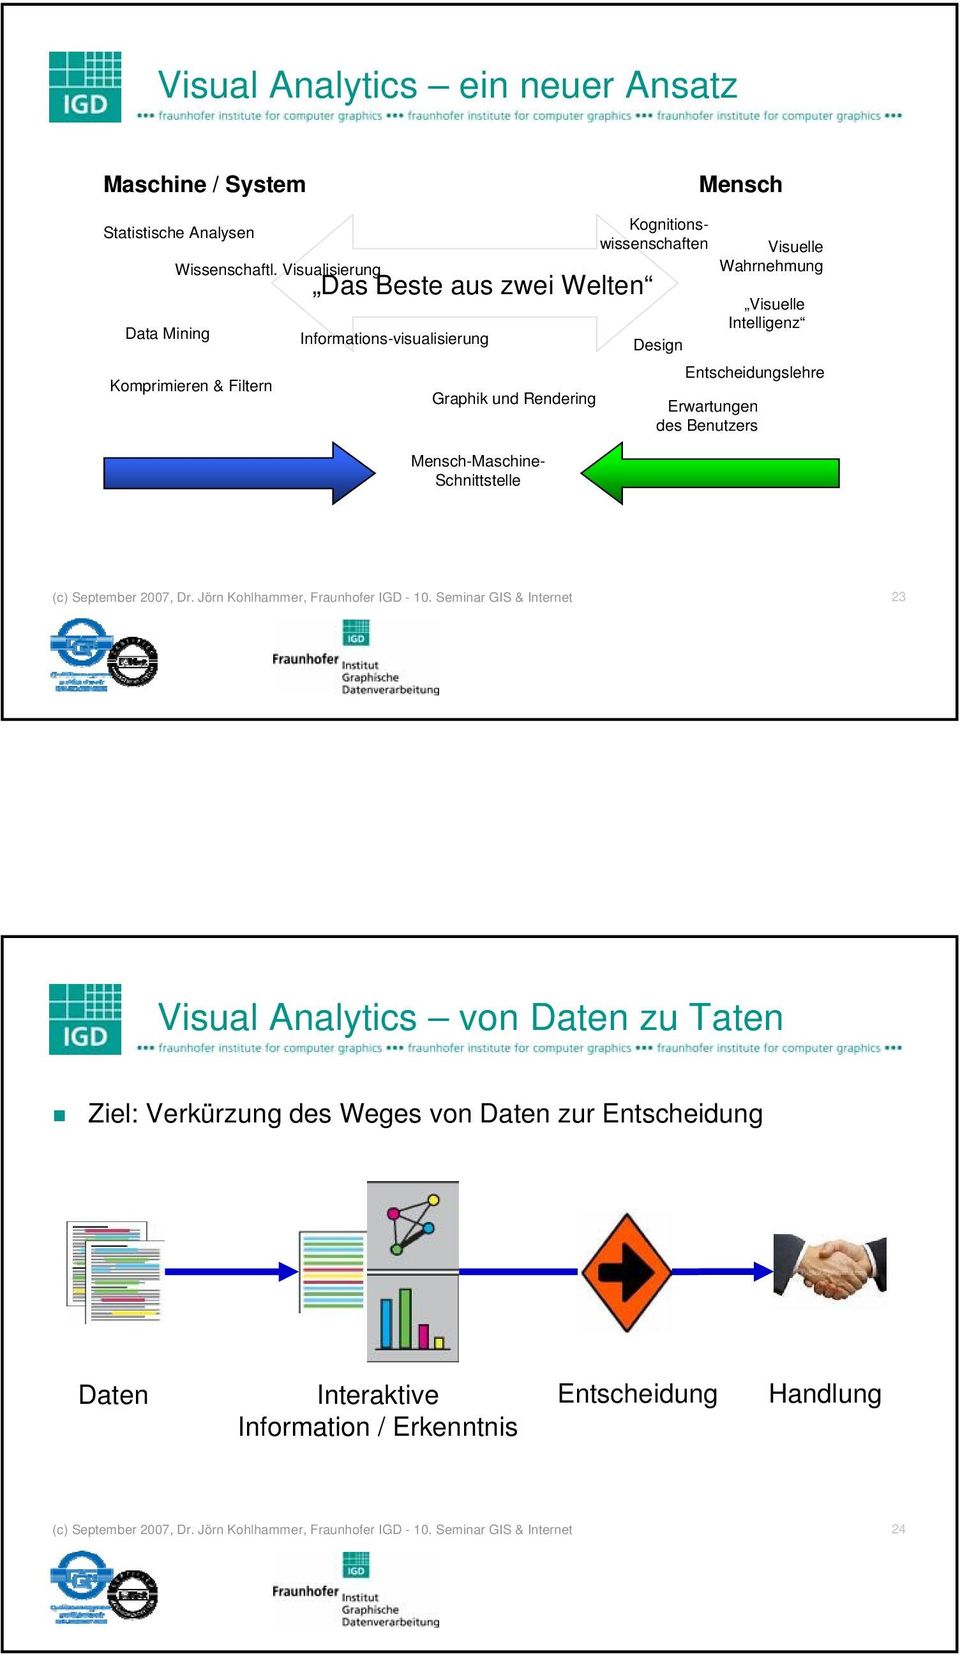 Design Visuelle Wahrnehmung Visuelle Intelligenz Entscheidungslehre Erwartungen des Benutzers (c) September 2007, Dr. Jörn Kohlhammer, Fraunhofer IGD - 10.